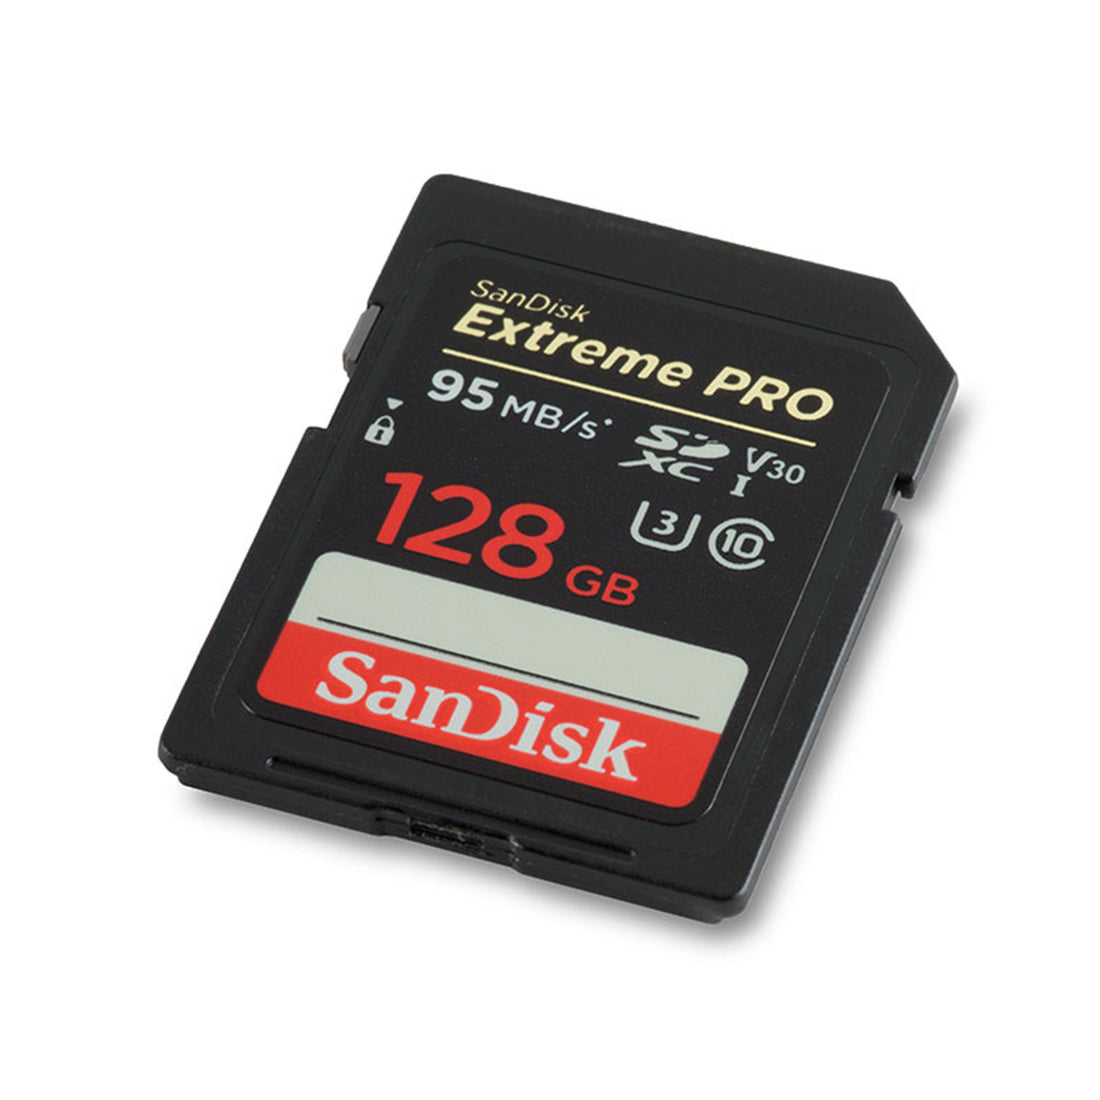 SanDisk Extreme Pro SDHC 128GB – 95MB/s V30 UHS-I U3